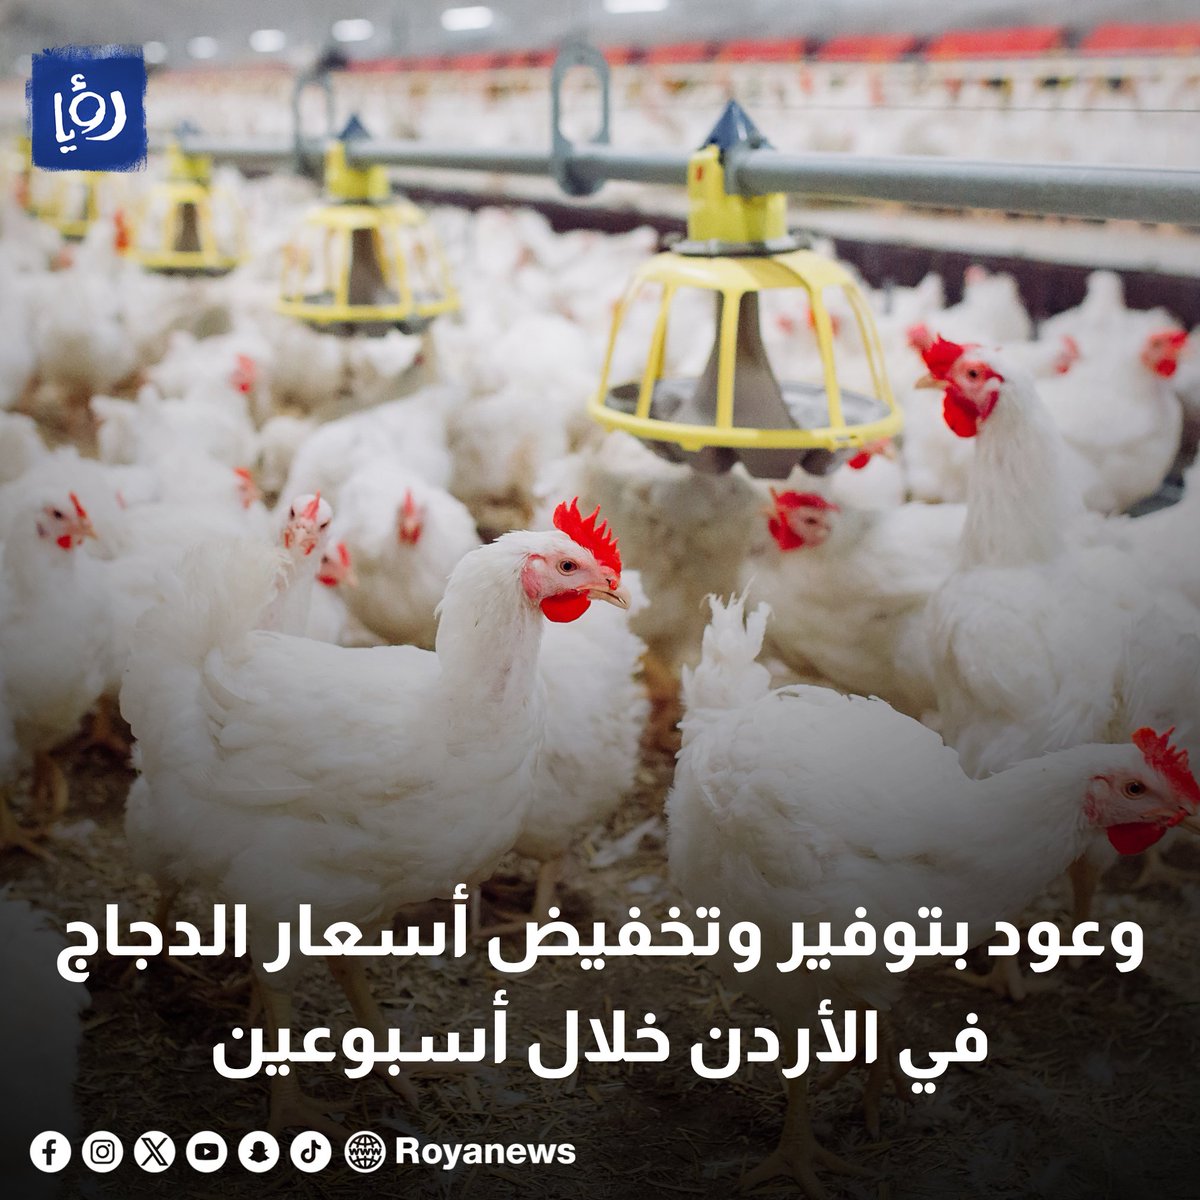 وعود بتوفير وتخفيض أسعار الدجاج في الأردن خلال أسبوعين - فيديو royanews.tv/news/327659 #رؤيا_الإخباري #الدجاج #المواد_الغذائية #عاجل